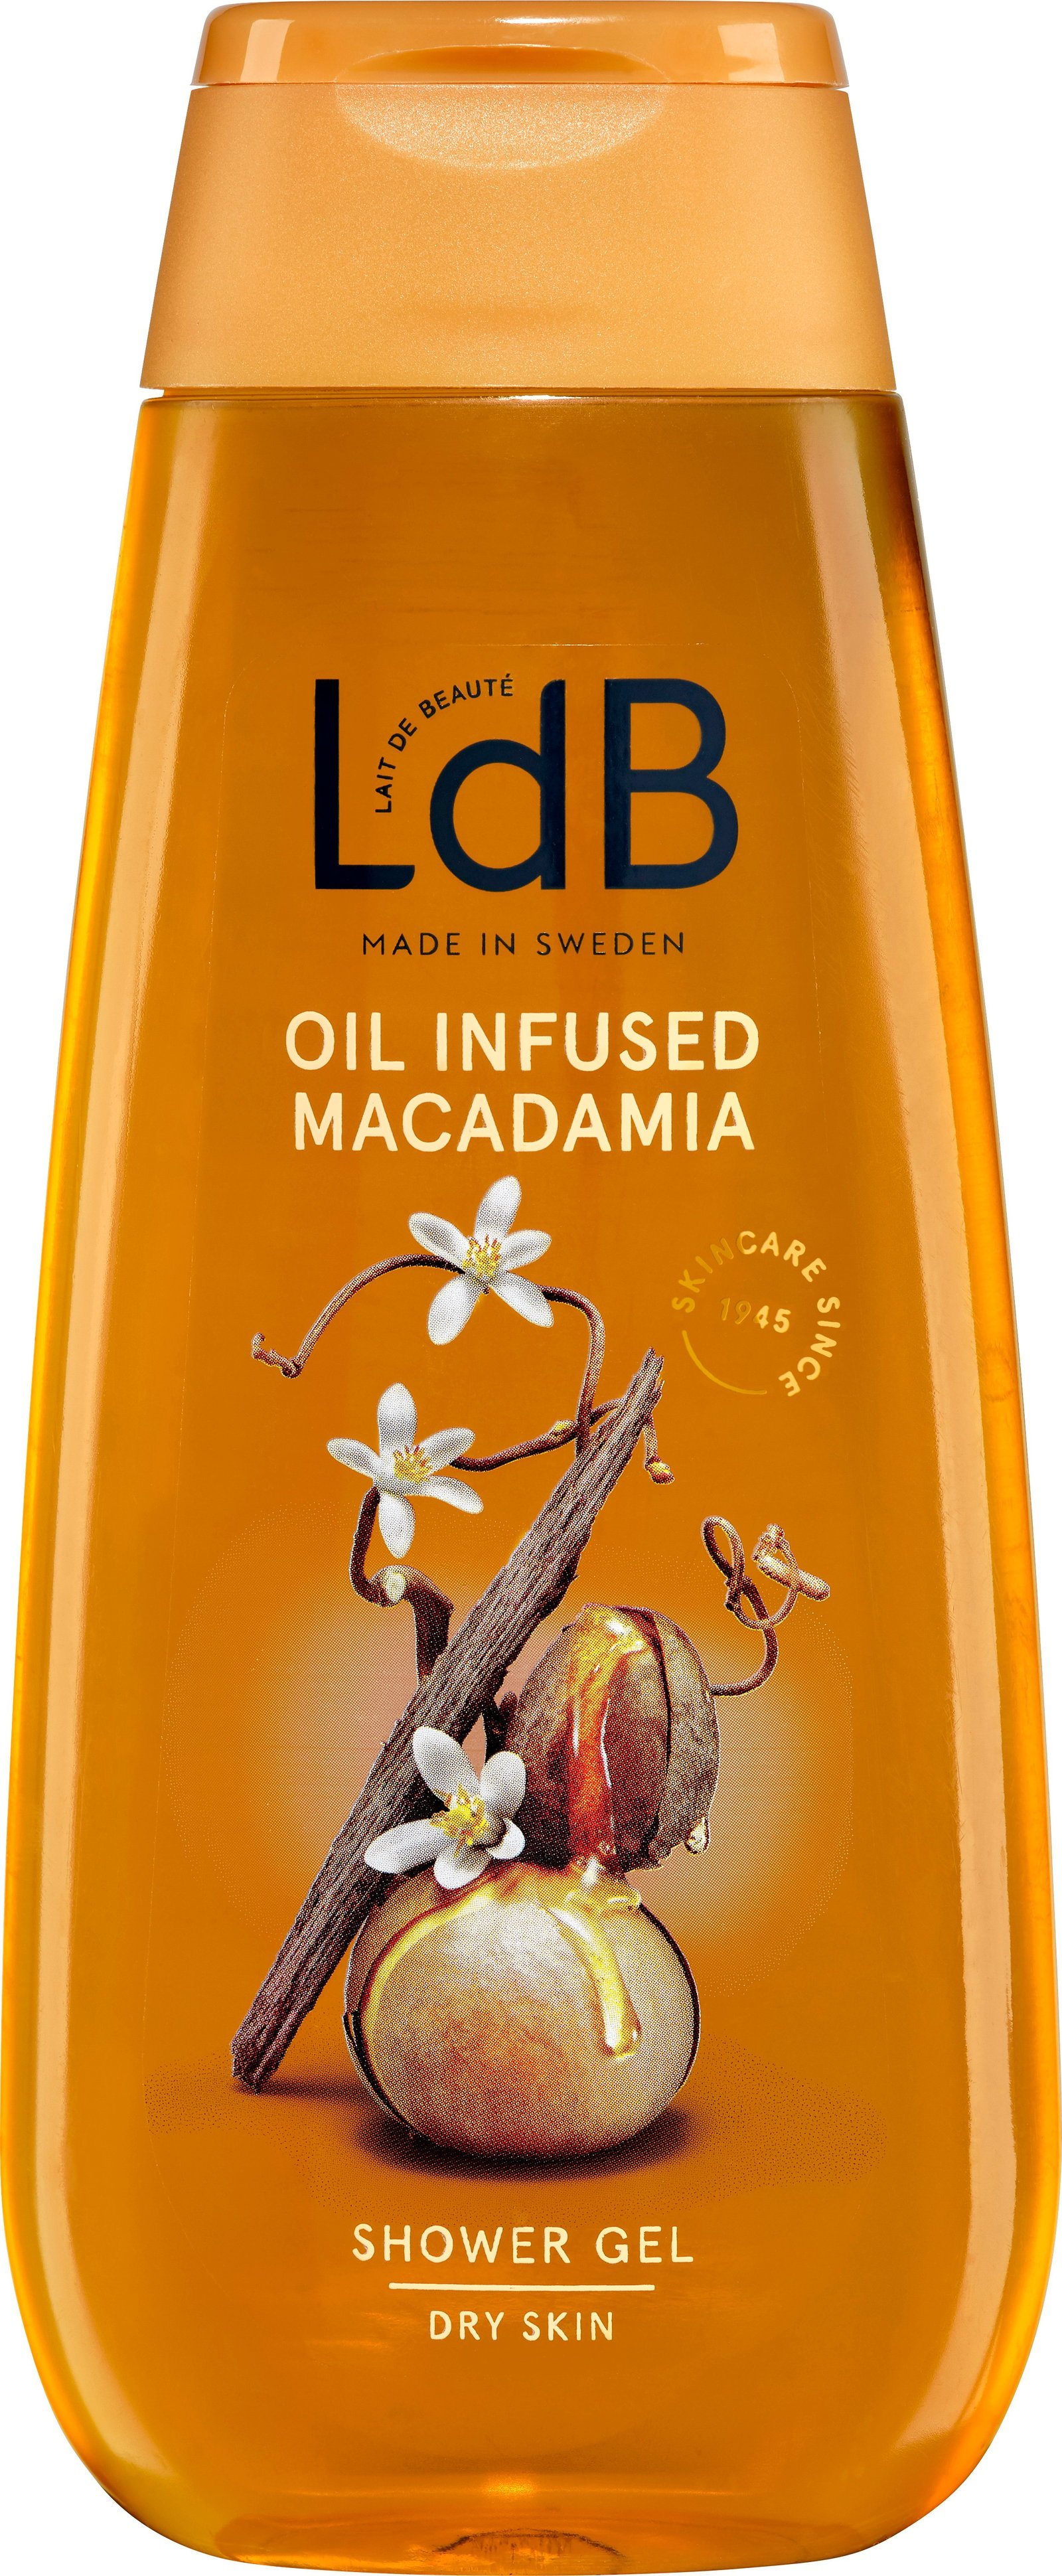 Ldb Oil Infused Macadamia Shower Gel 250ML